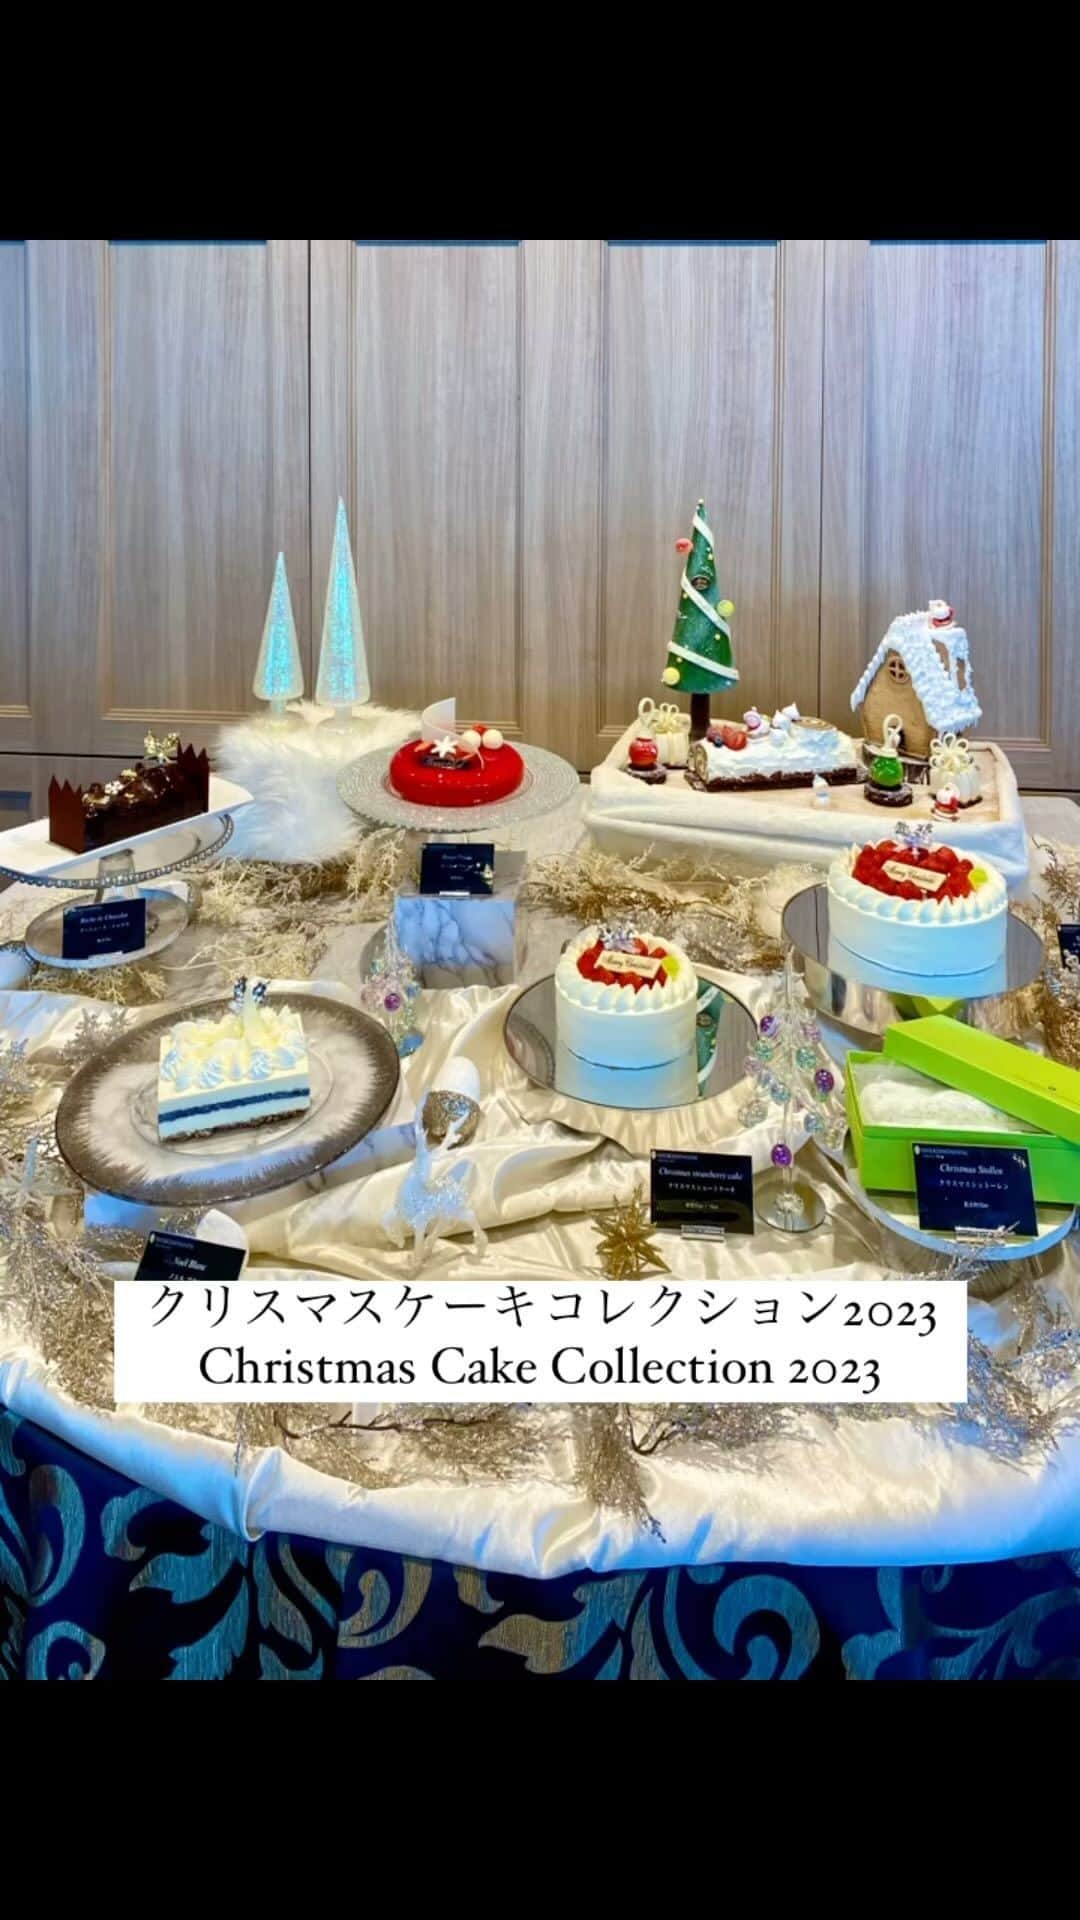 InterContinental Tokyo Bayのインスタグラム：「. 🎄Cristmas Cahe Collection 2023  クリスマスケーキのご予約を10月1日よりスタート🎂 定番のクリスマスショートケーキの他、デザインや味わいの異なるケーキを3種類と、スペシャルノエルセット、シュトーレンをご用意いたしました。  皆様のクリスマスを華やかに演出いたします💕  詳細はホームページをご覧ください。 https://x.gd/Vjl0g  #intercontinentaltokyobay #intercontinental #ホテルインターコンチネンタル東京ベイ  #インターコンチネンタル東京ベイ  #nyloungeboutique #nyラウンジブティック  #クリスマスケーキ #christmascake  #シュトーレン #ブッシュドノエル  #10月1日予約開始 #12月16日販売開始」